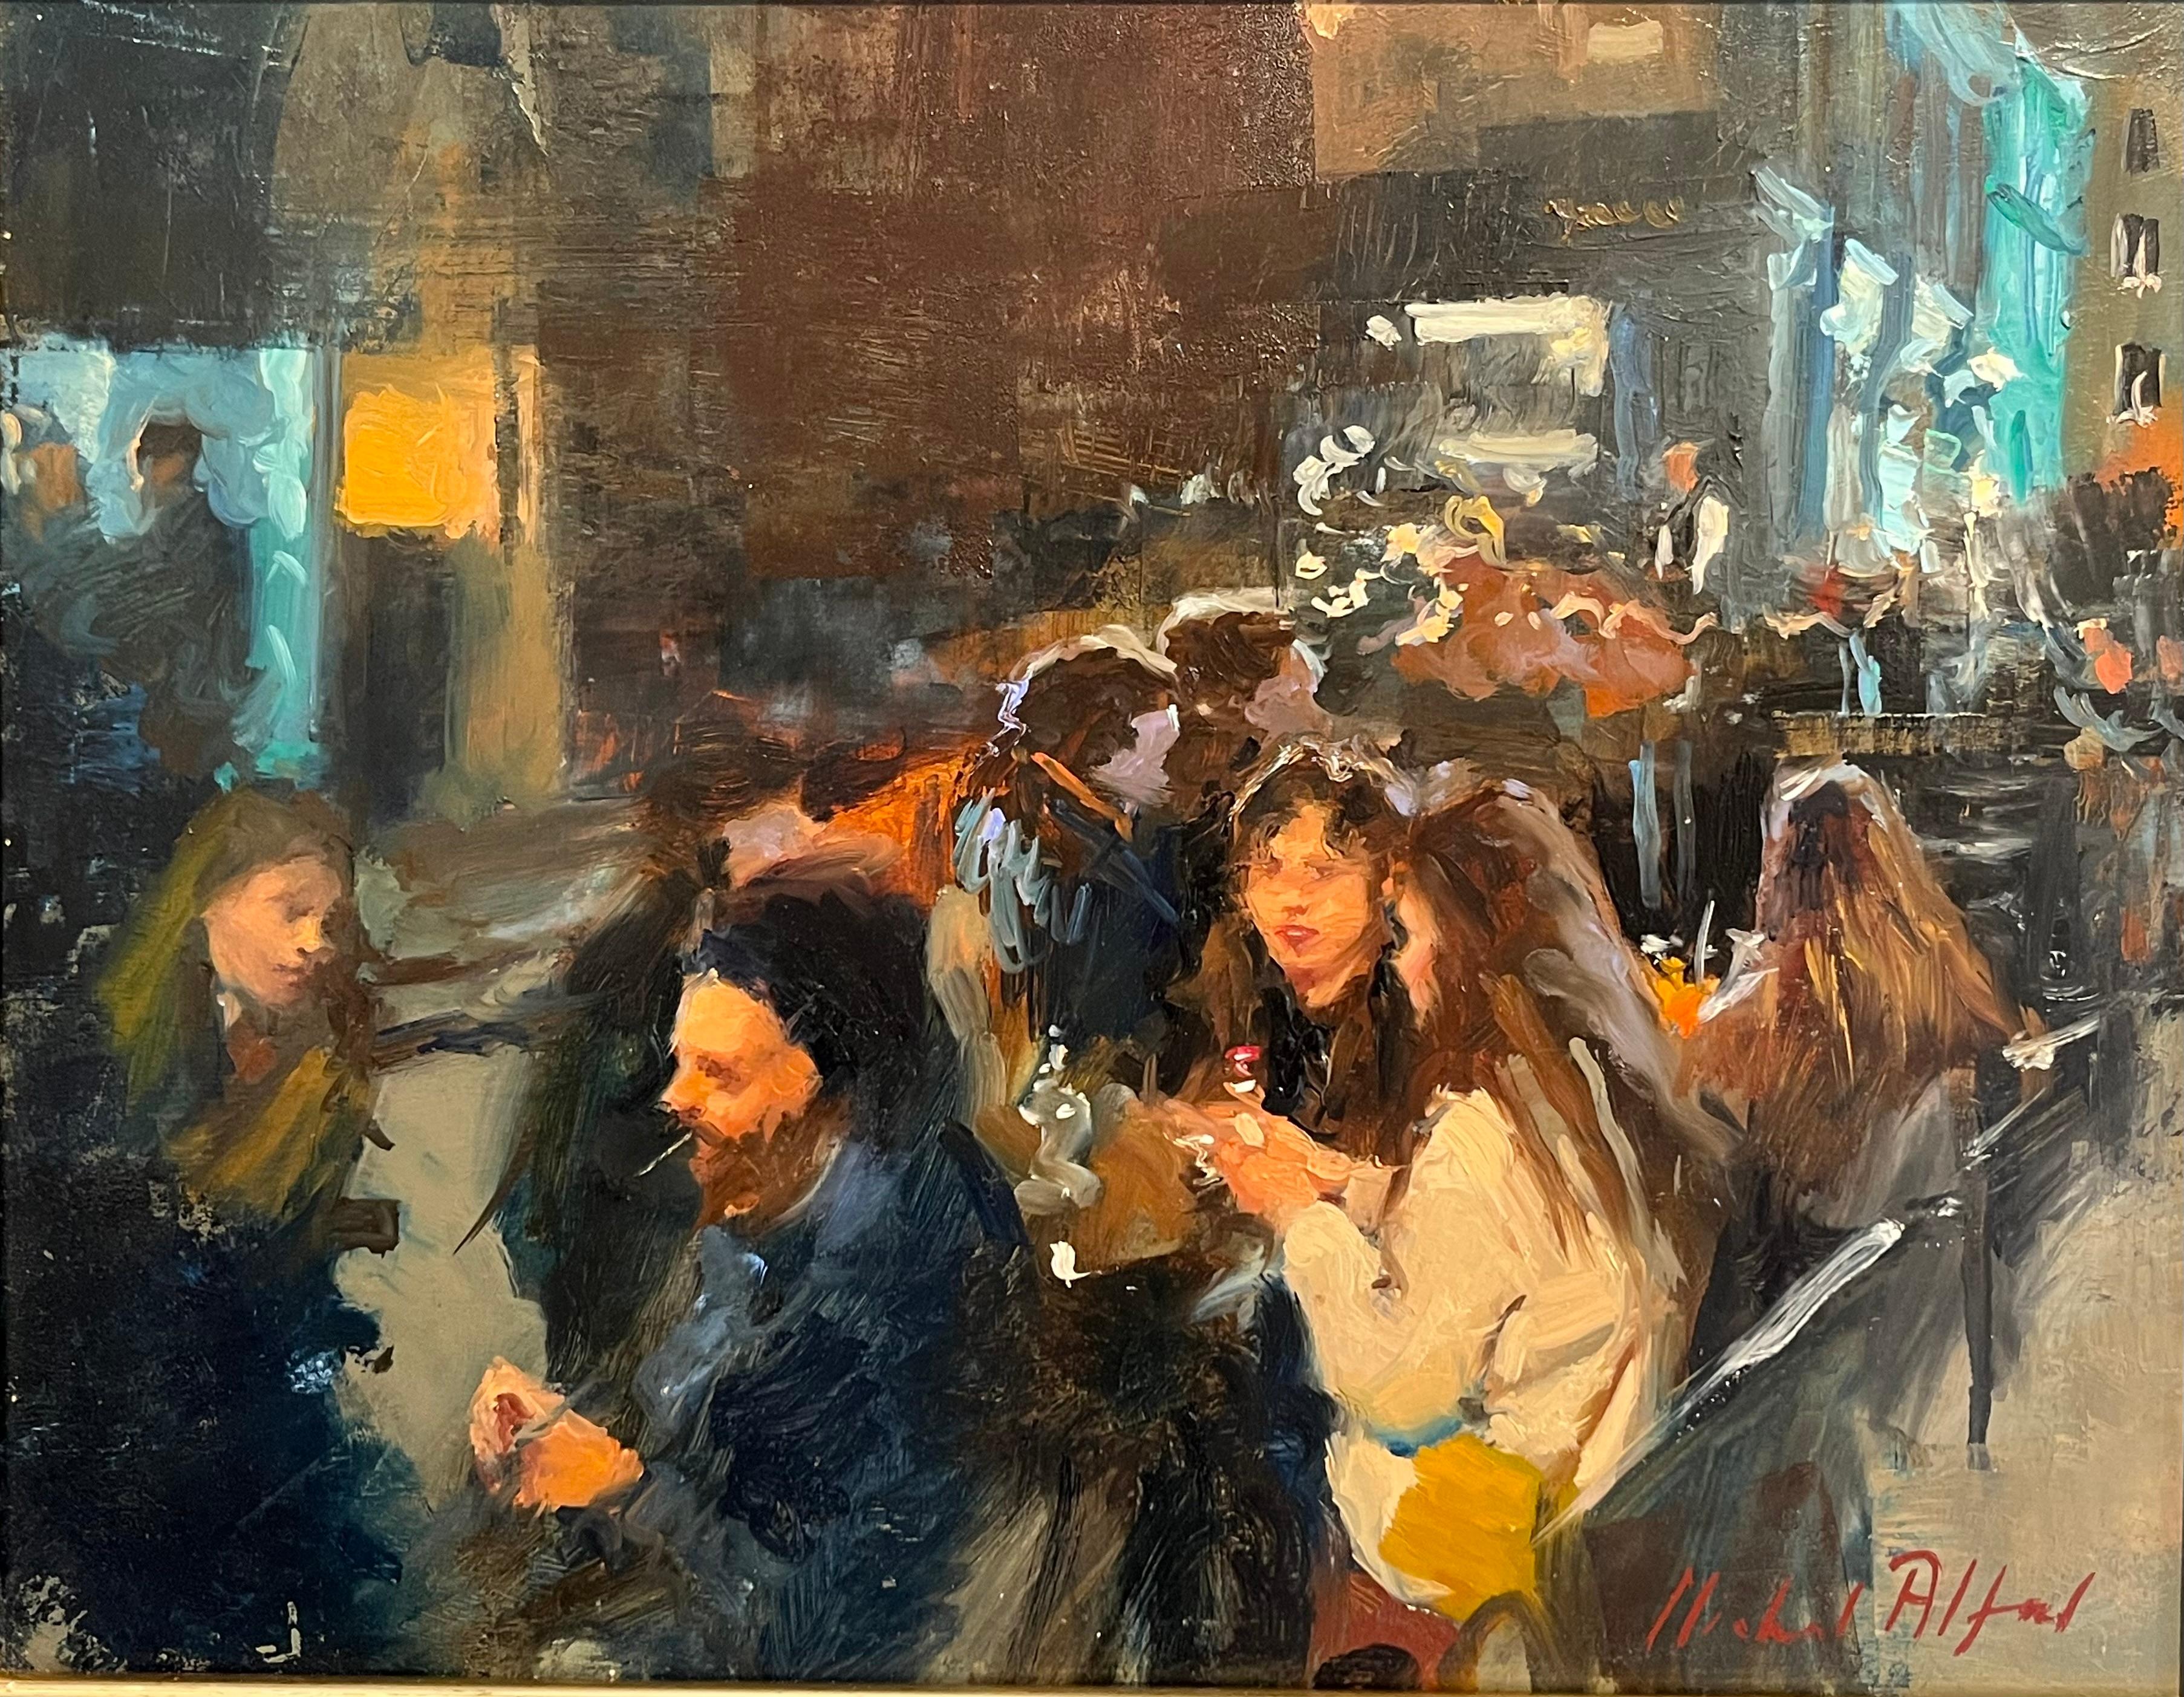 Outside Dining, West End-original impressionnisme - peinture figurative de paysage urbain 